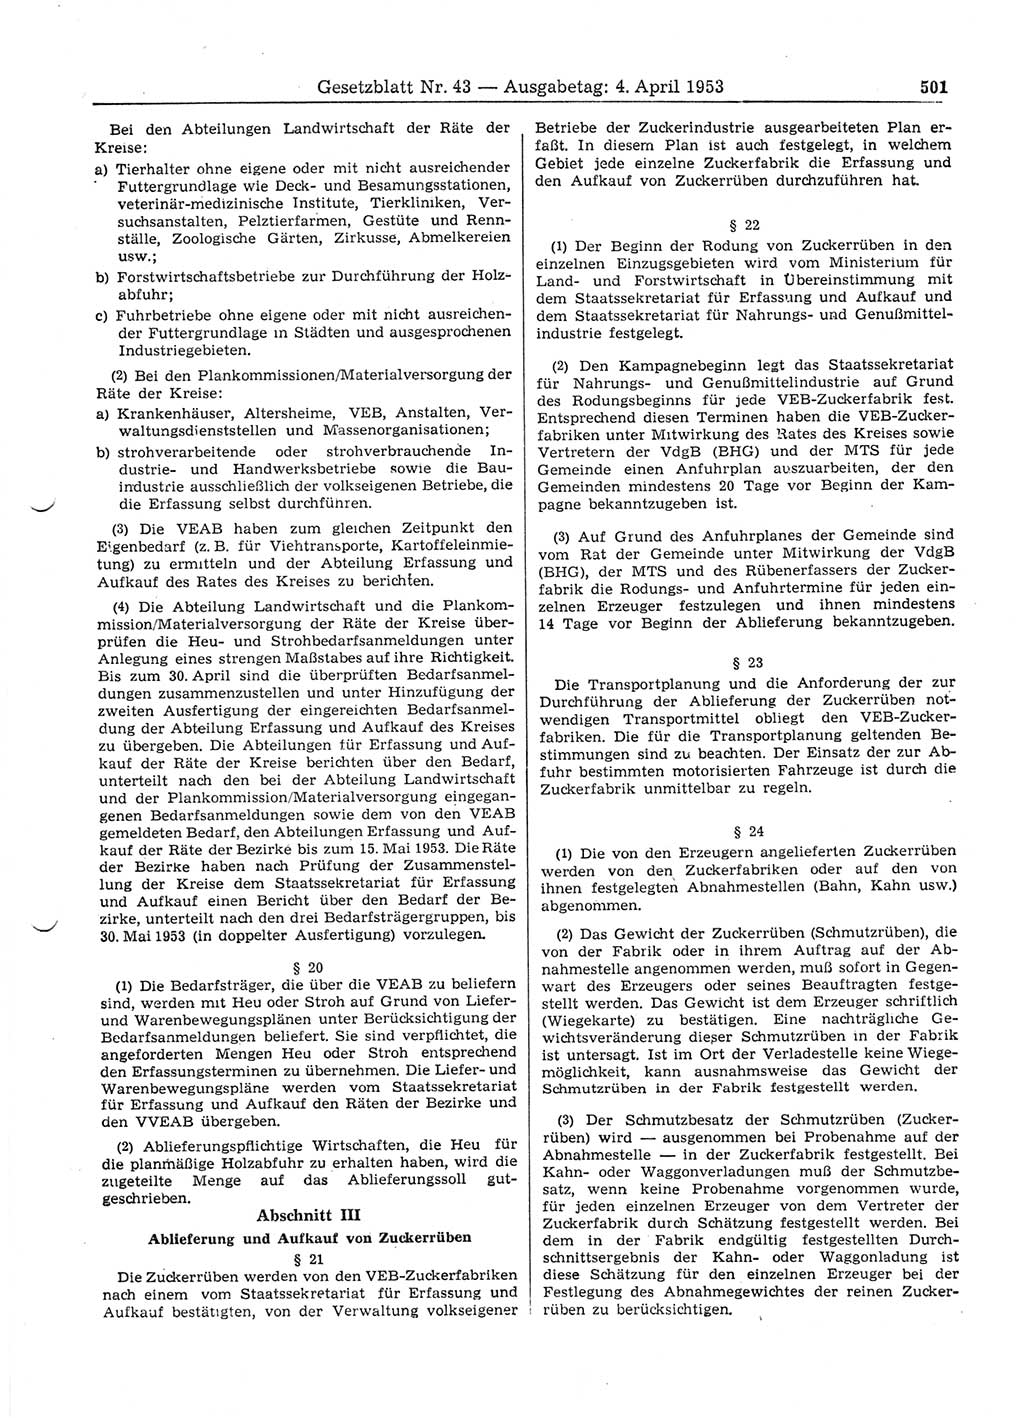 Gesetzblatt (GBl.) der Deutschen Demokratischen Republik (DDR) 1953, Seite 501 (GBl. DDR 1953, S. 501)